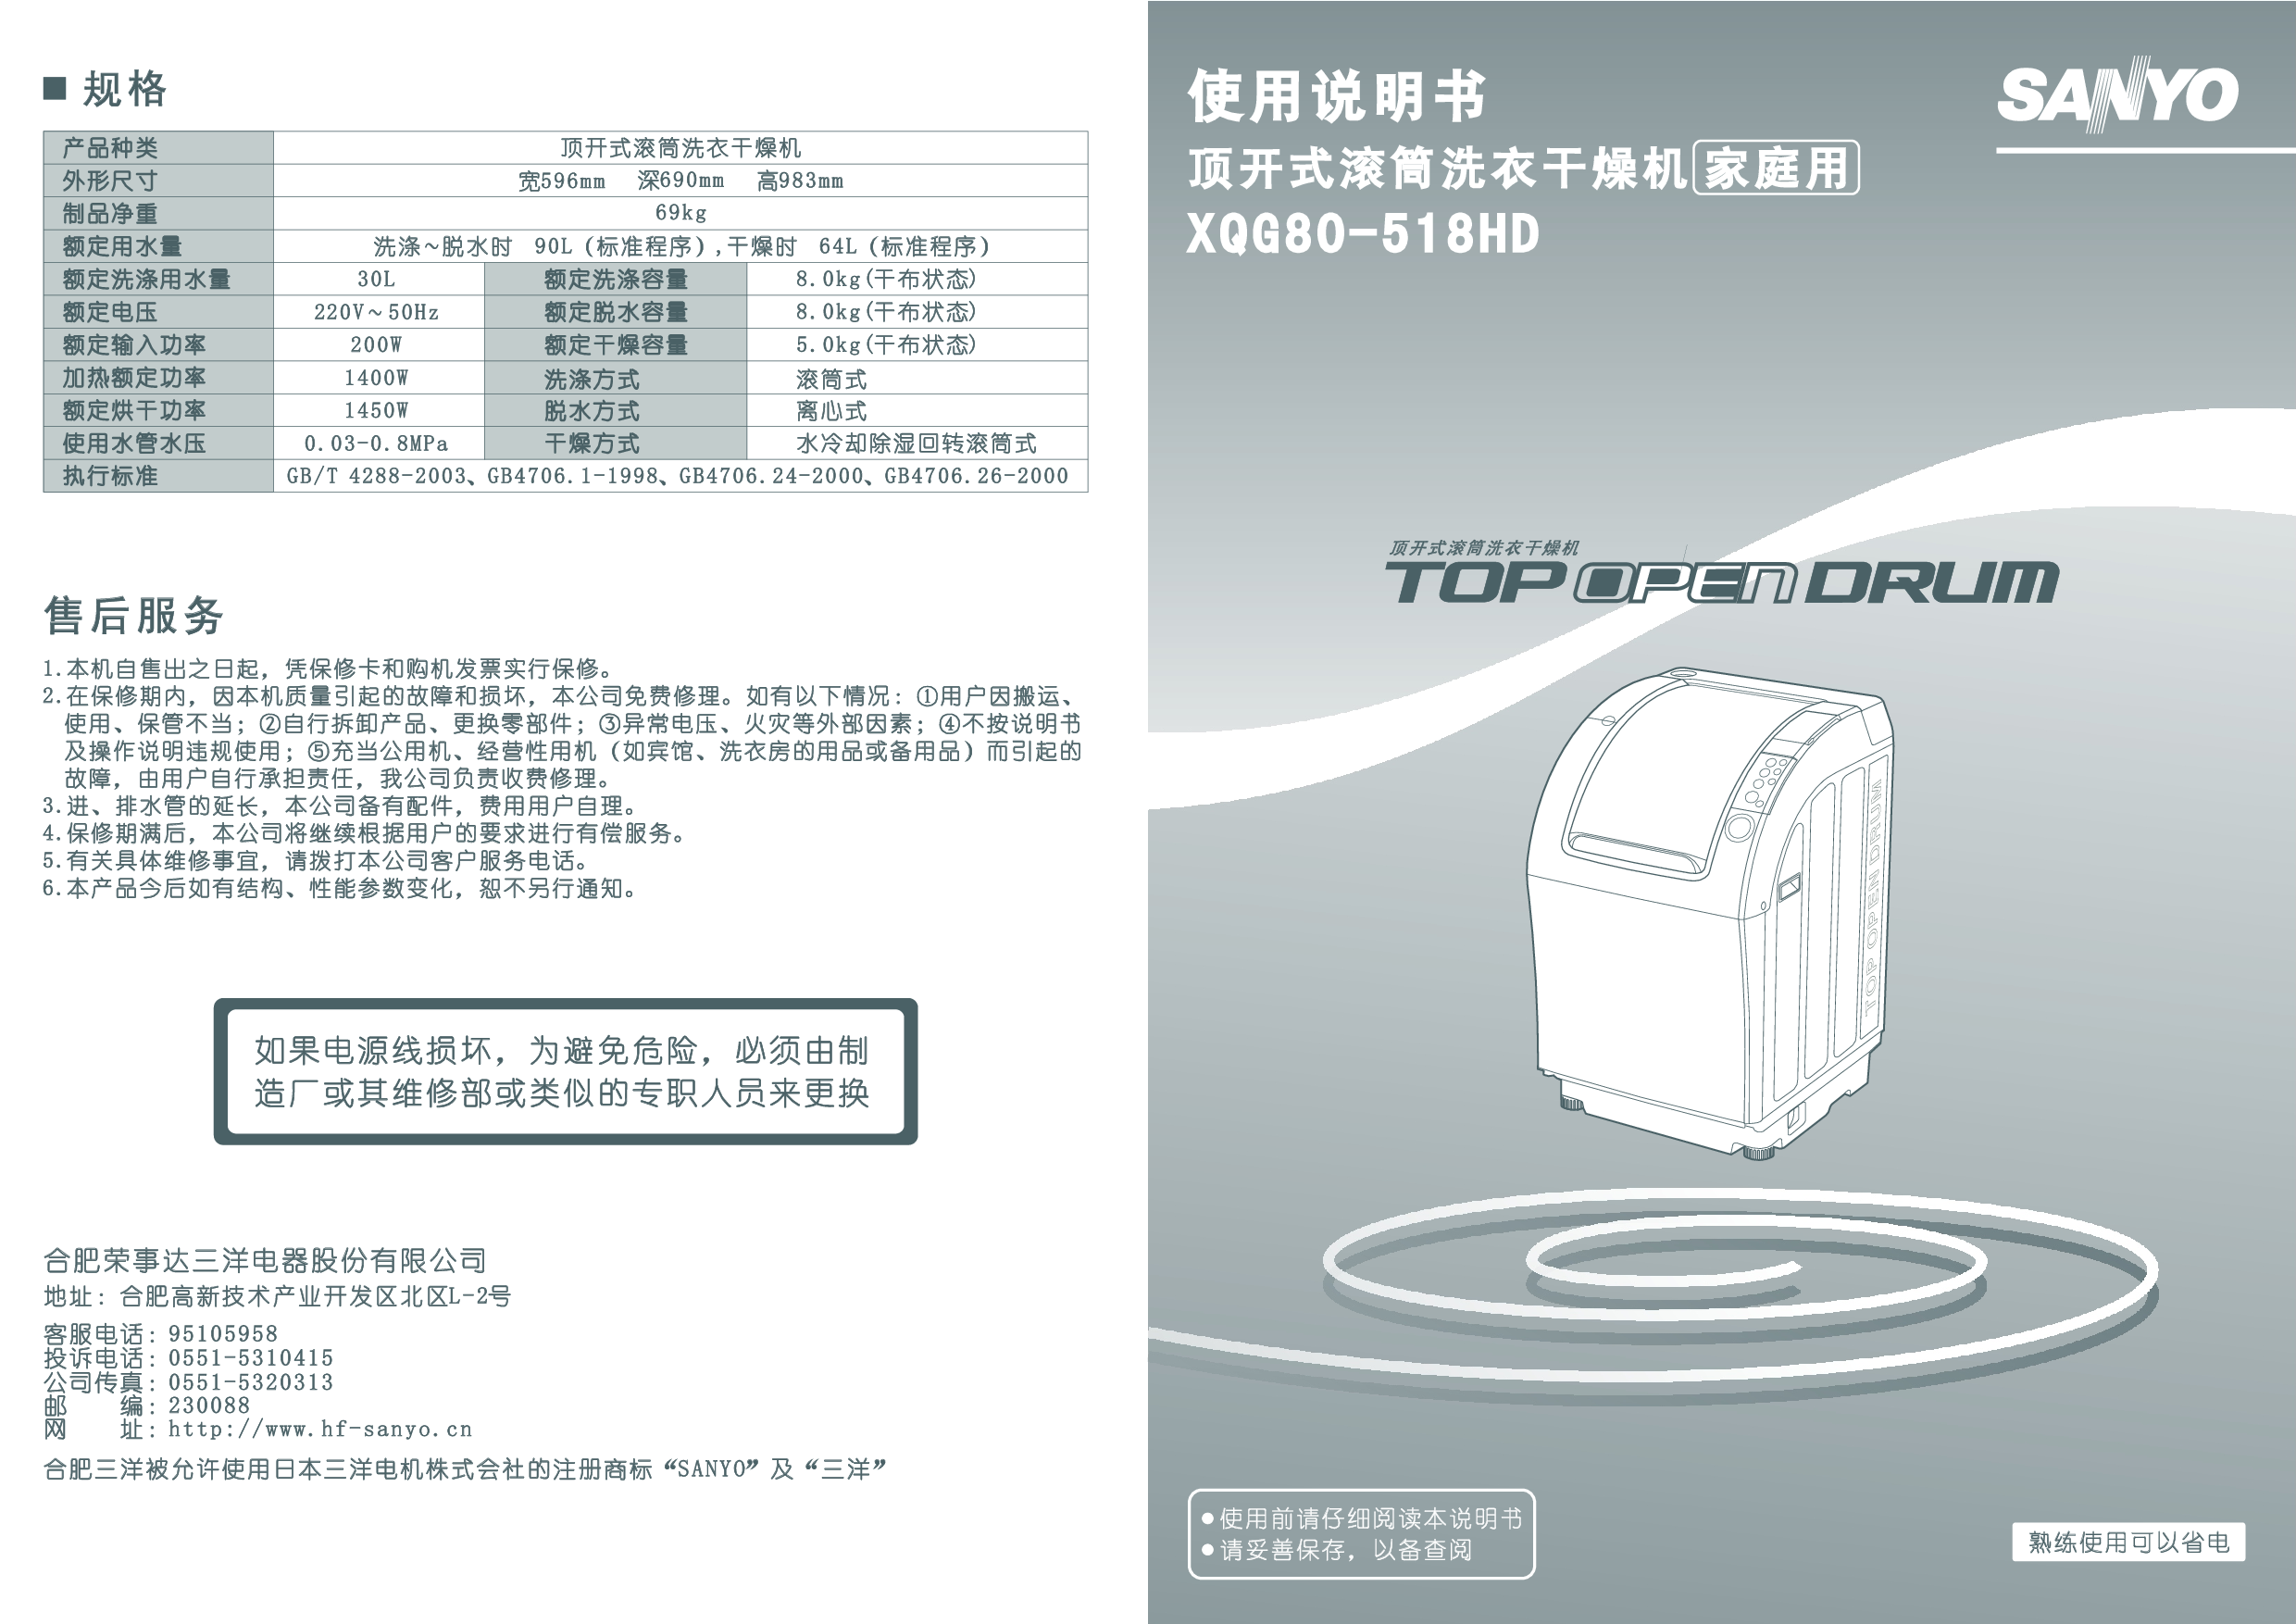 三洋 Sanyo XQB80-518HD 用户指南 封面